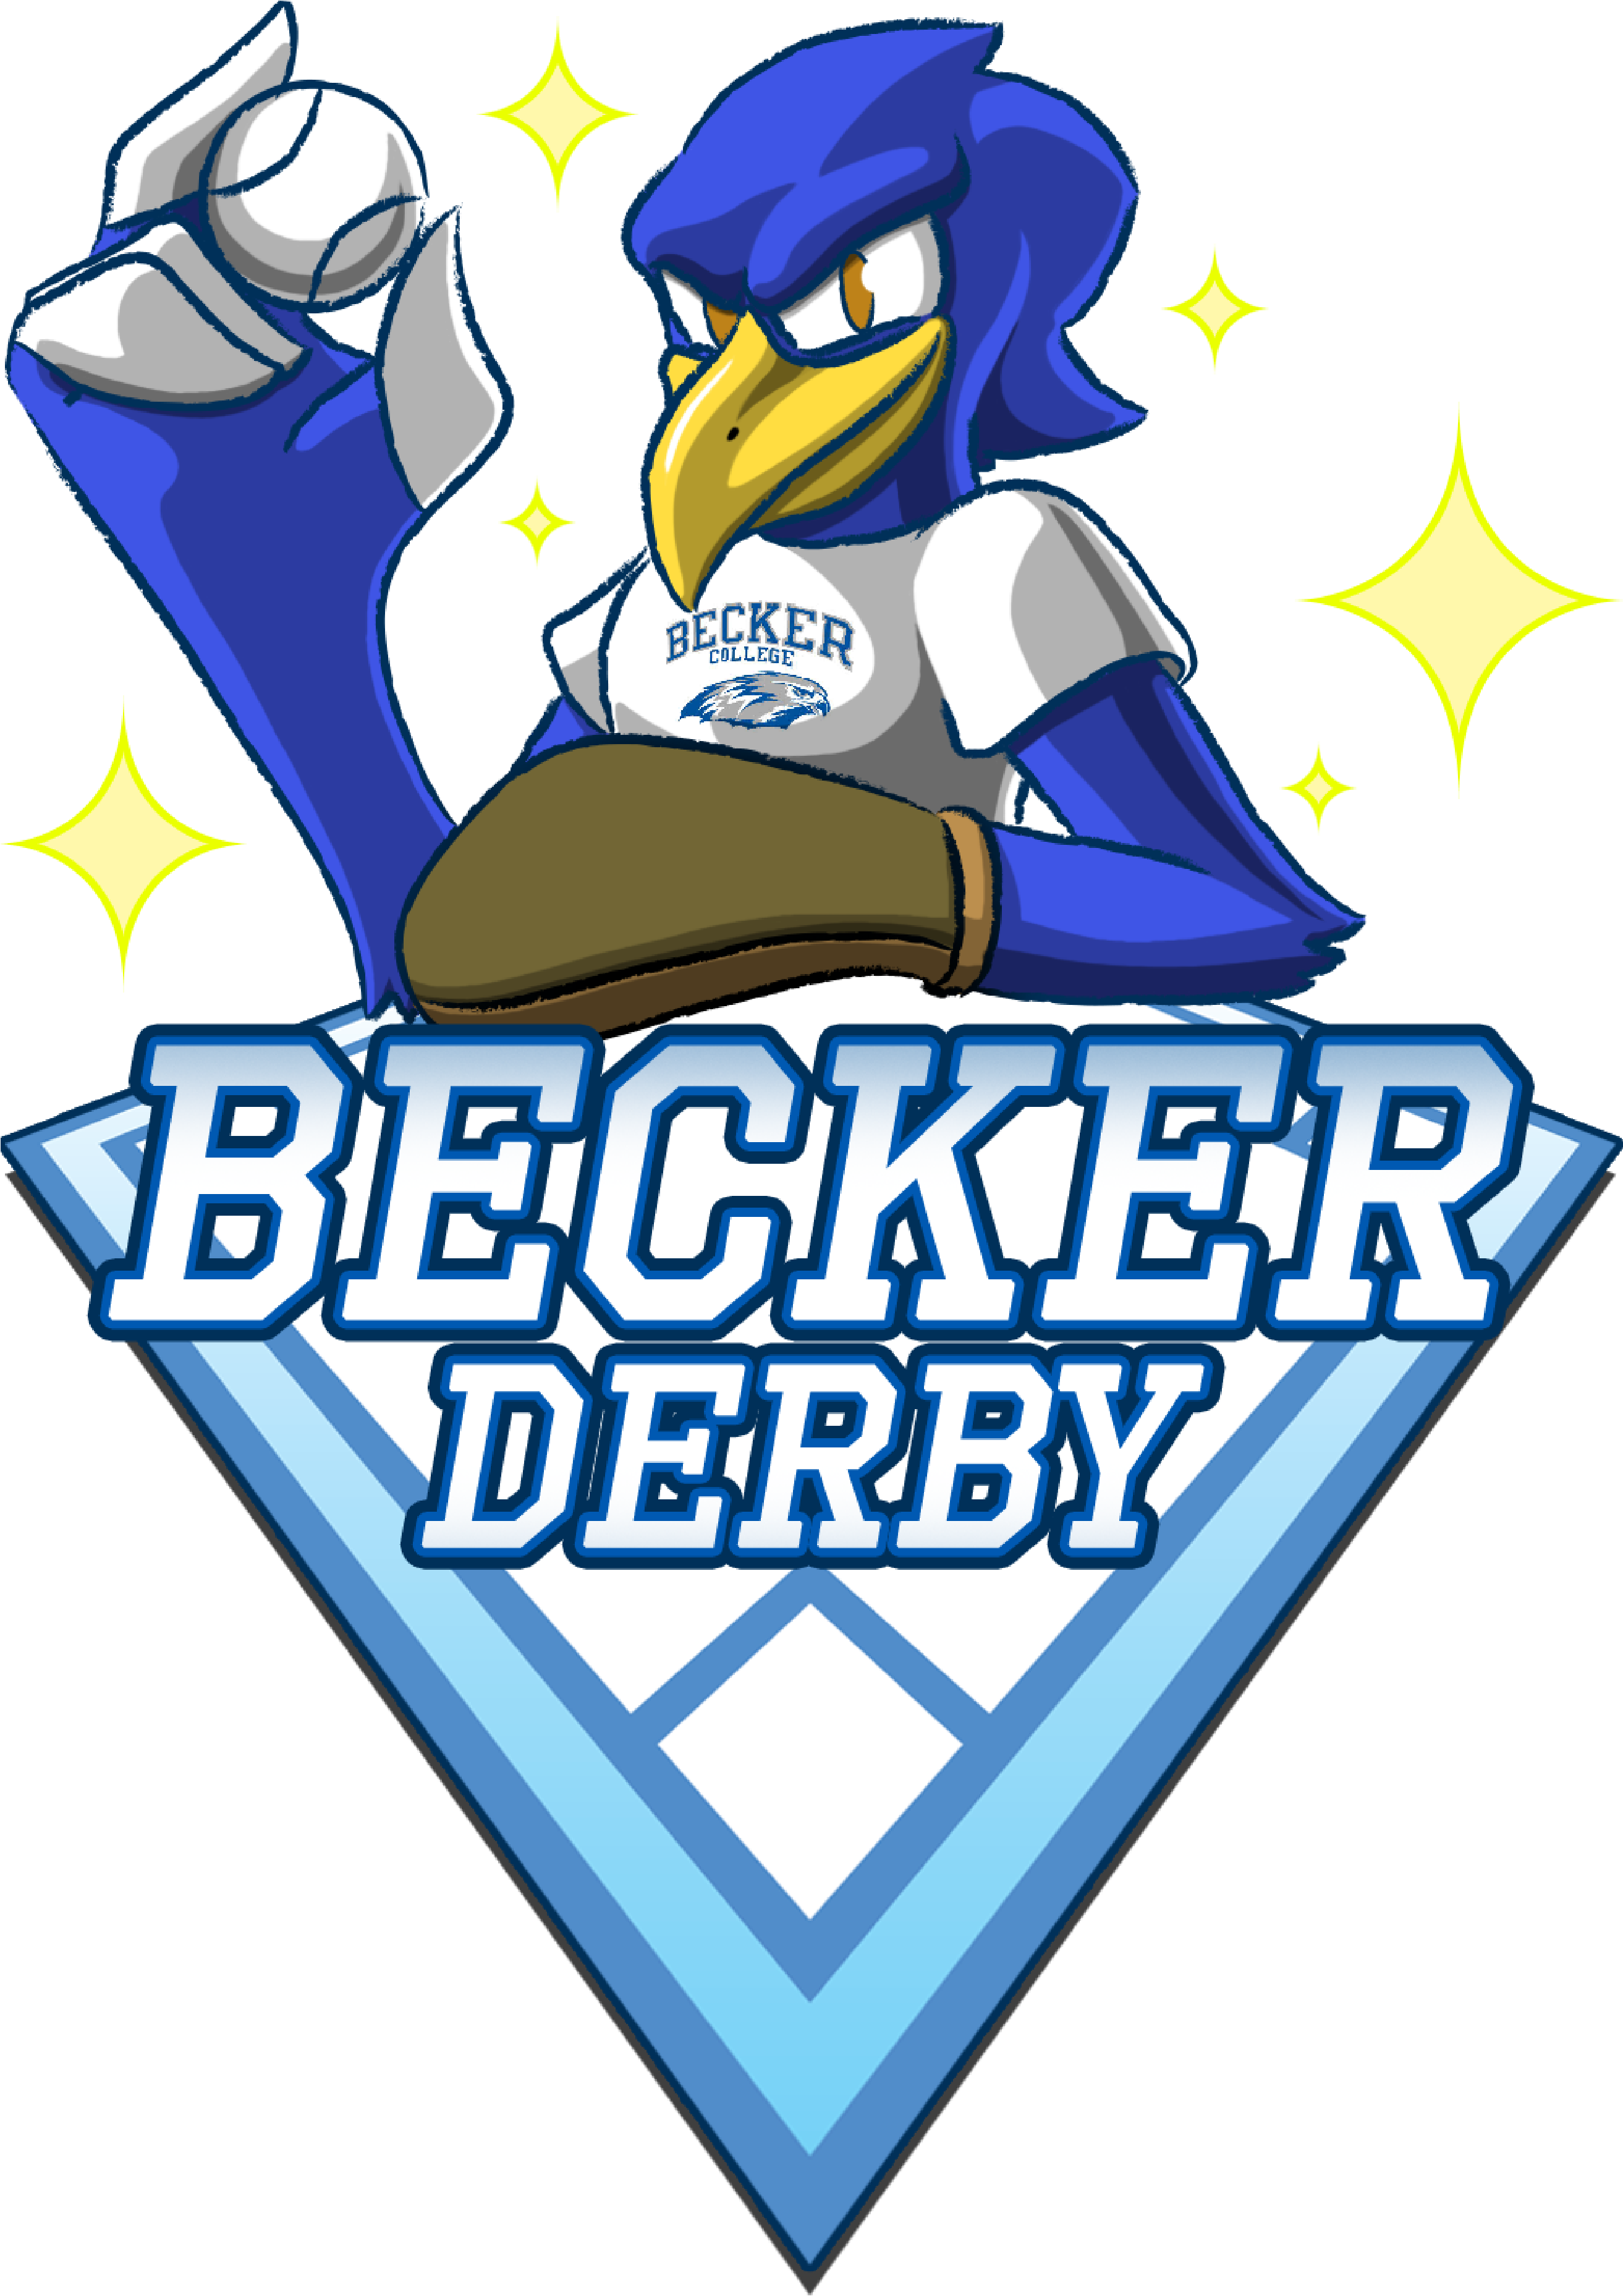 Becker Derby Logo - Becker Derby - Endless Baseball (4000x4000)